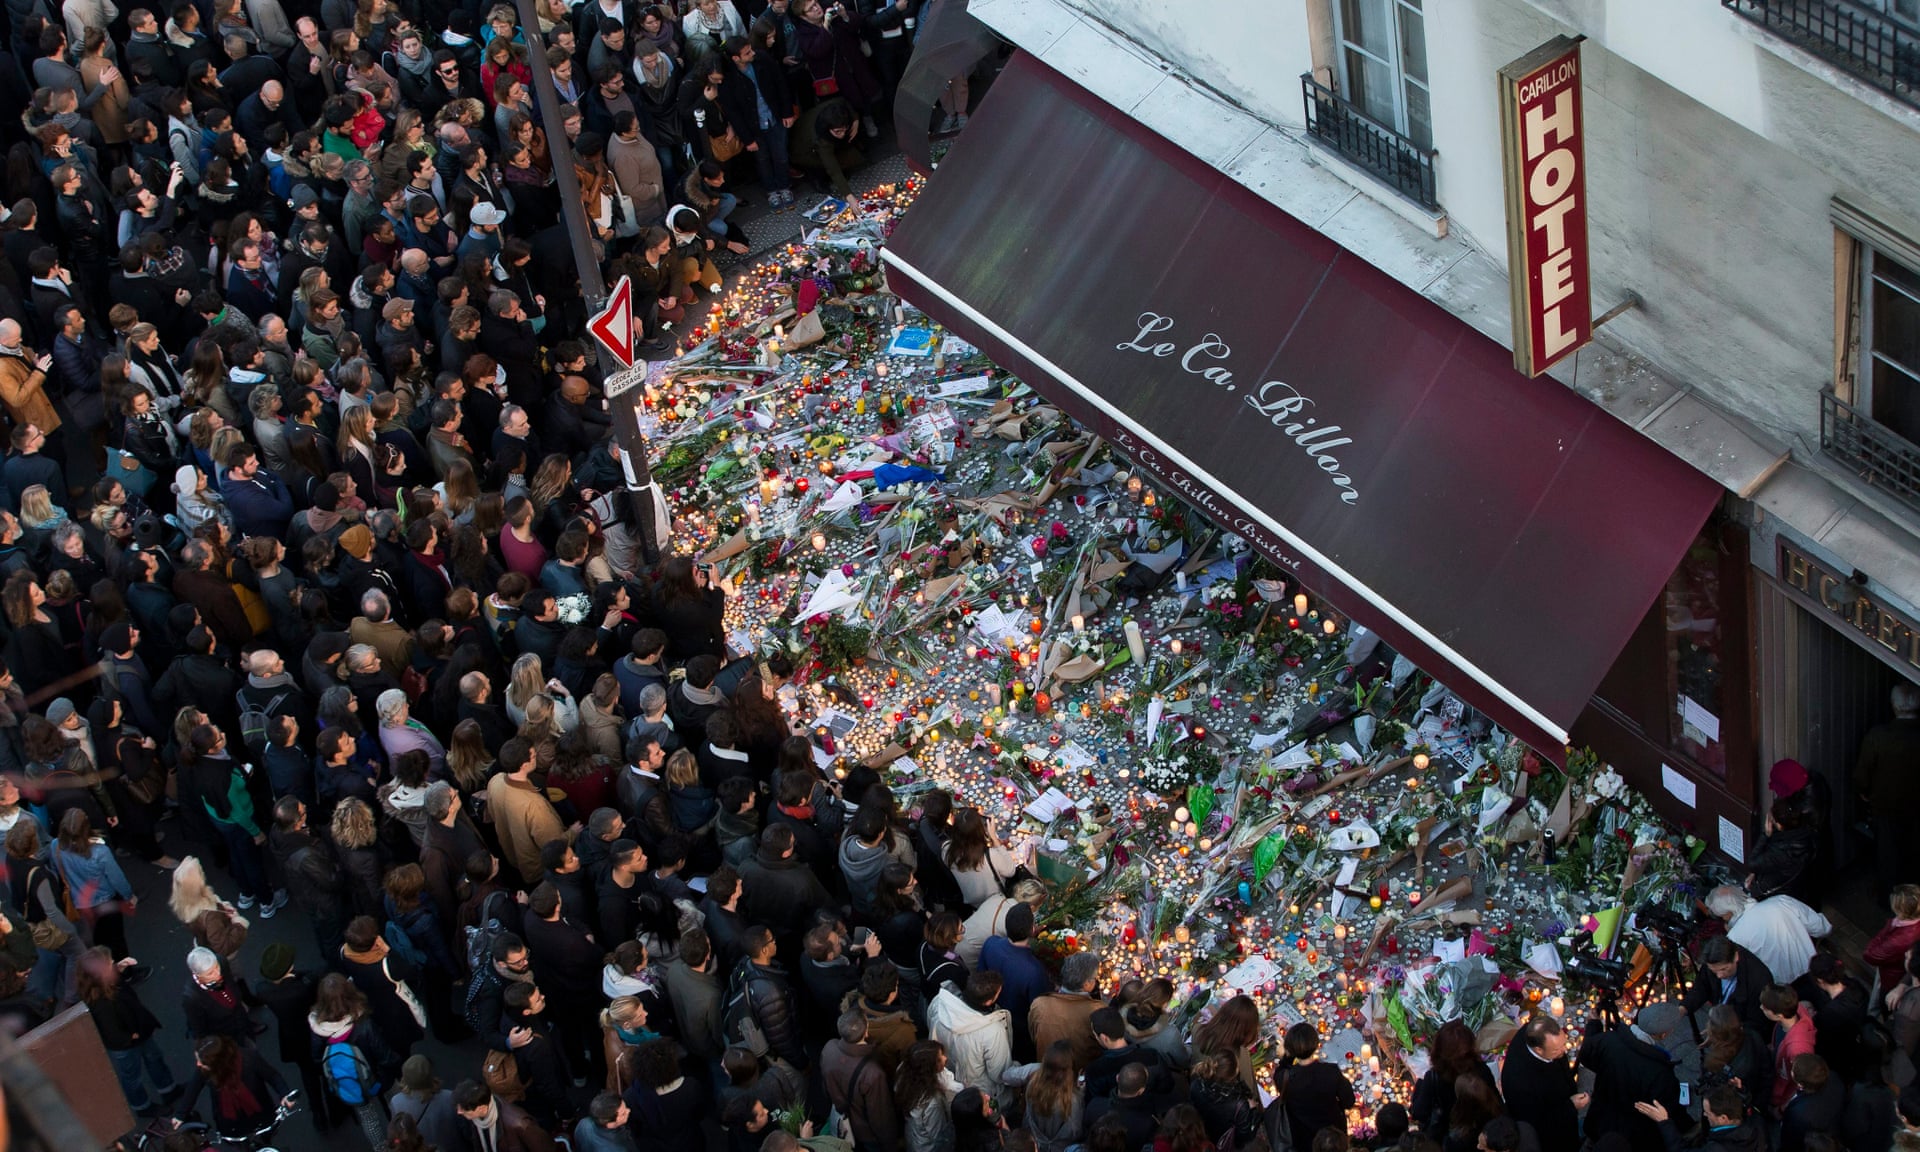 attentati parigi